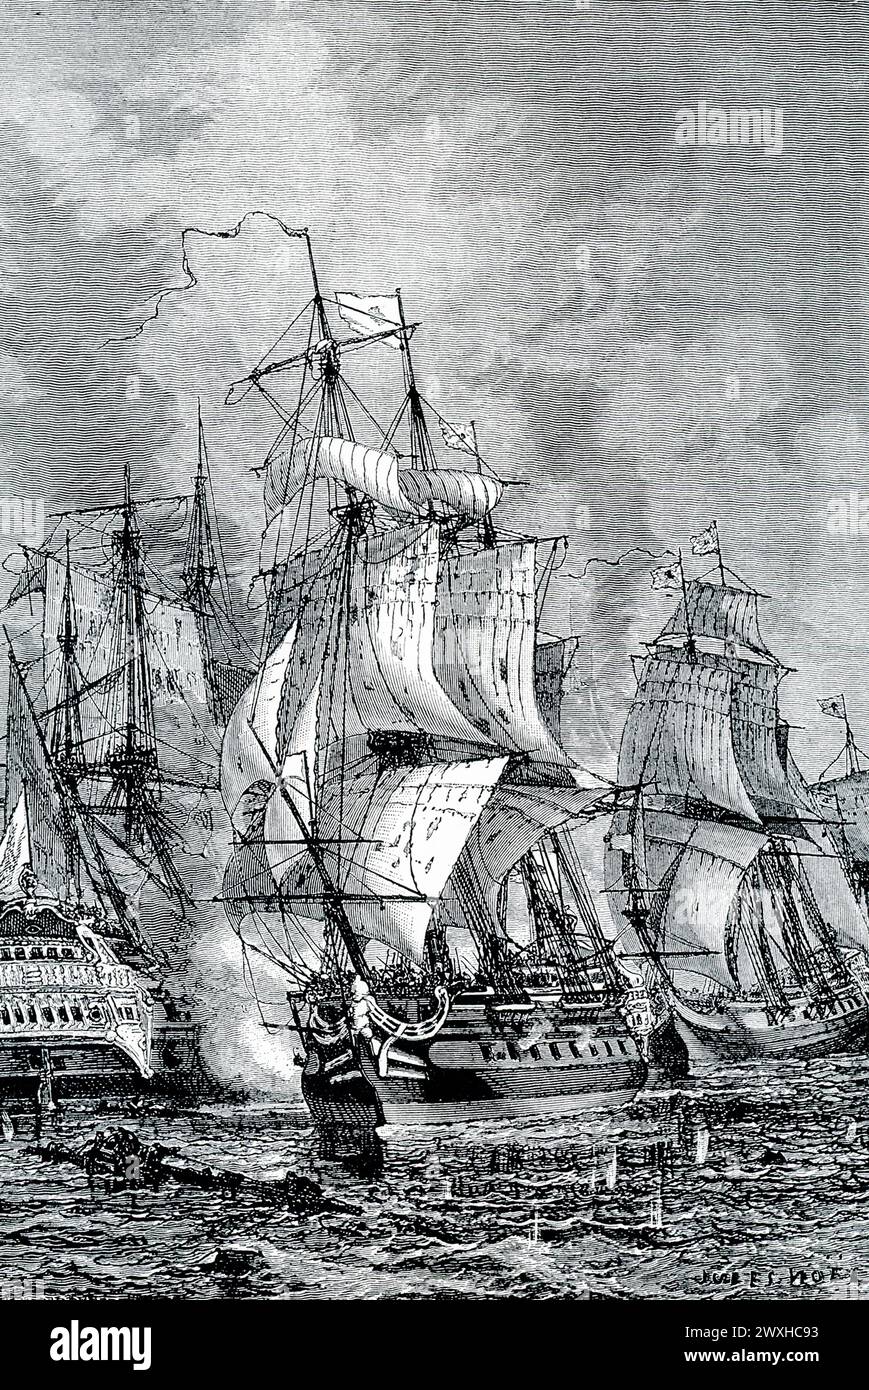 La didascalia dei primi anni '1900 recita: 'LA VITTORIA NAVALE DI BLAKE SU VAN TROMP, 1653.—durante il tempo di Cromwell, gli olandesi e gli inglesi ebbero la loro epica lotta per la padronanza dei mari. Gli Hollanders sconfissero il famoso ammiraglio inglese Blake, e si dice che Van Tromp issò una scopa sulla testa d'oca come segno che aveva spazzato gli inglesi dai mari. Ma Blake ebbe la sua vendetta sconfiggendo la flotta di Van Tromp al largo di Portsmouth, e poco dopo gli inglesi infastidirono completamente i loro antichi rivali." Entrambe le parti rivendicarono la vittoria nella battaglia di Scheveningen. Foto Stock